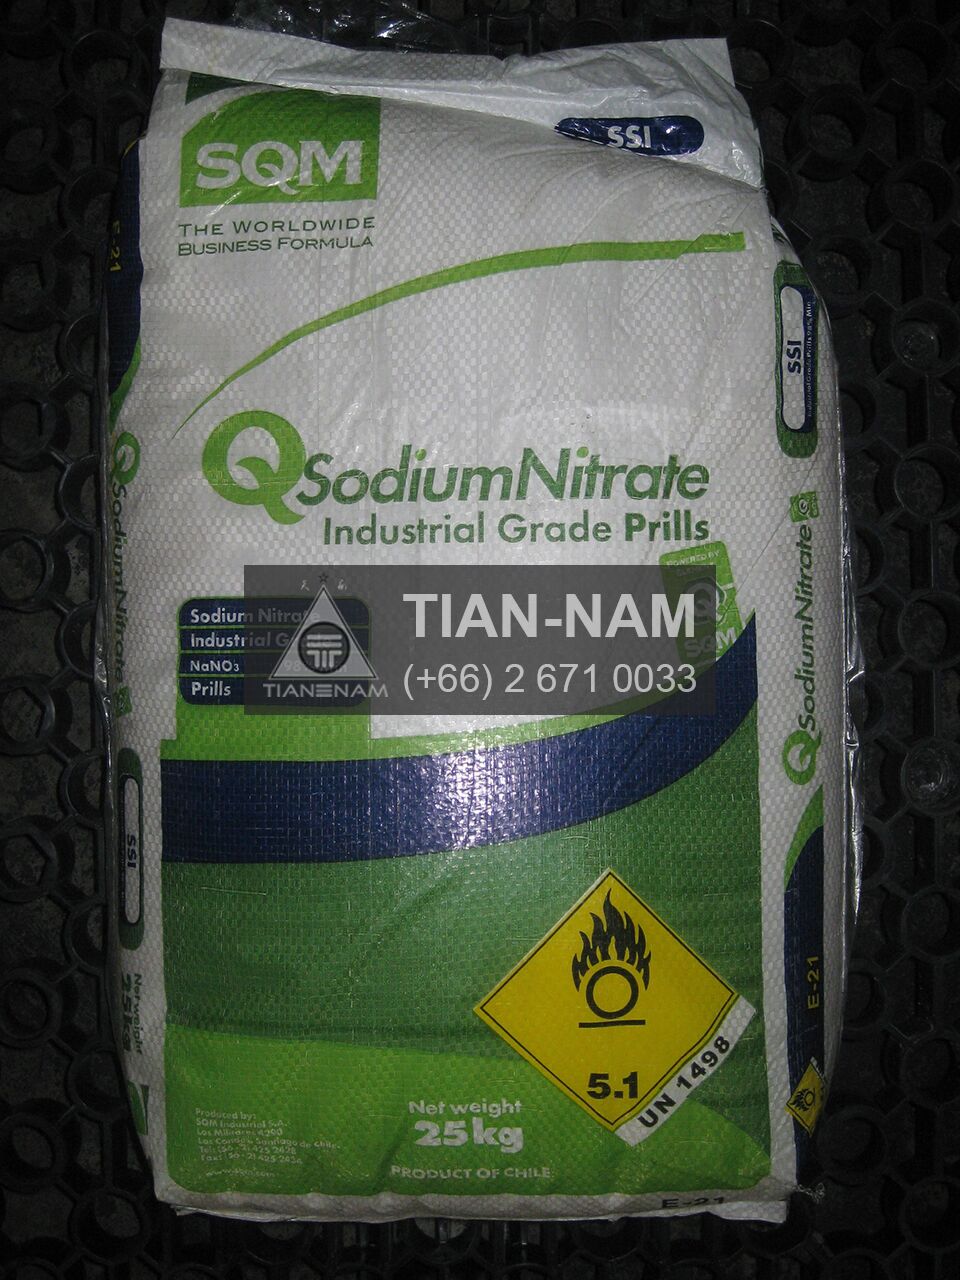 Sodium Nitrate Chile โซเดียม ไนเตรต ชิลี